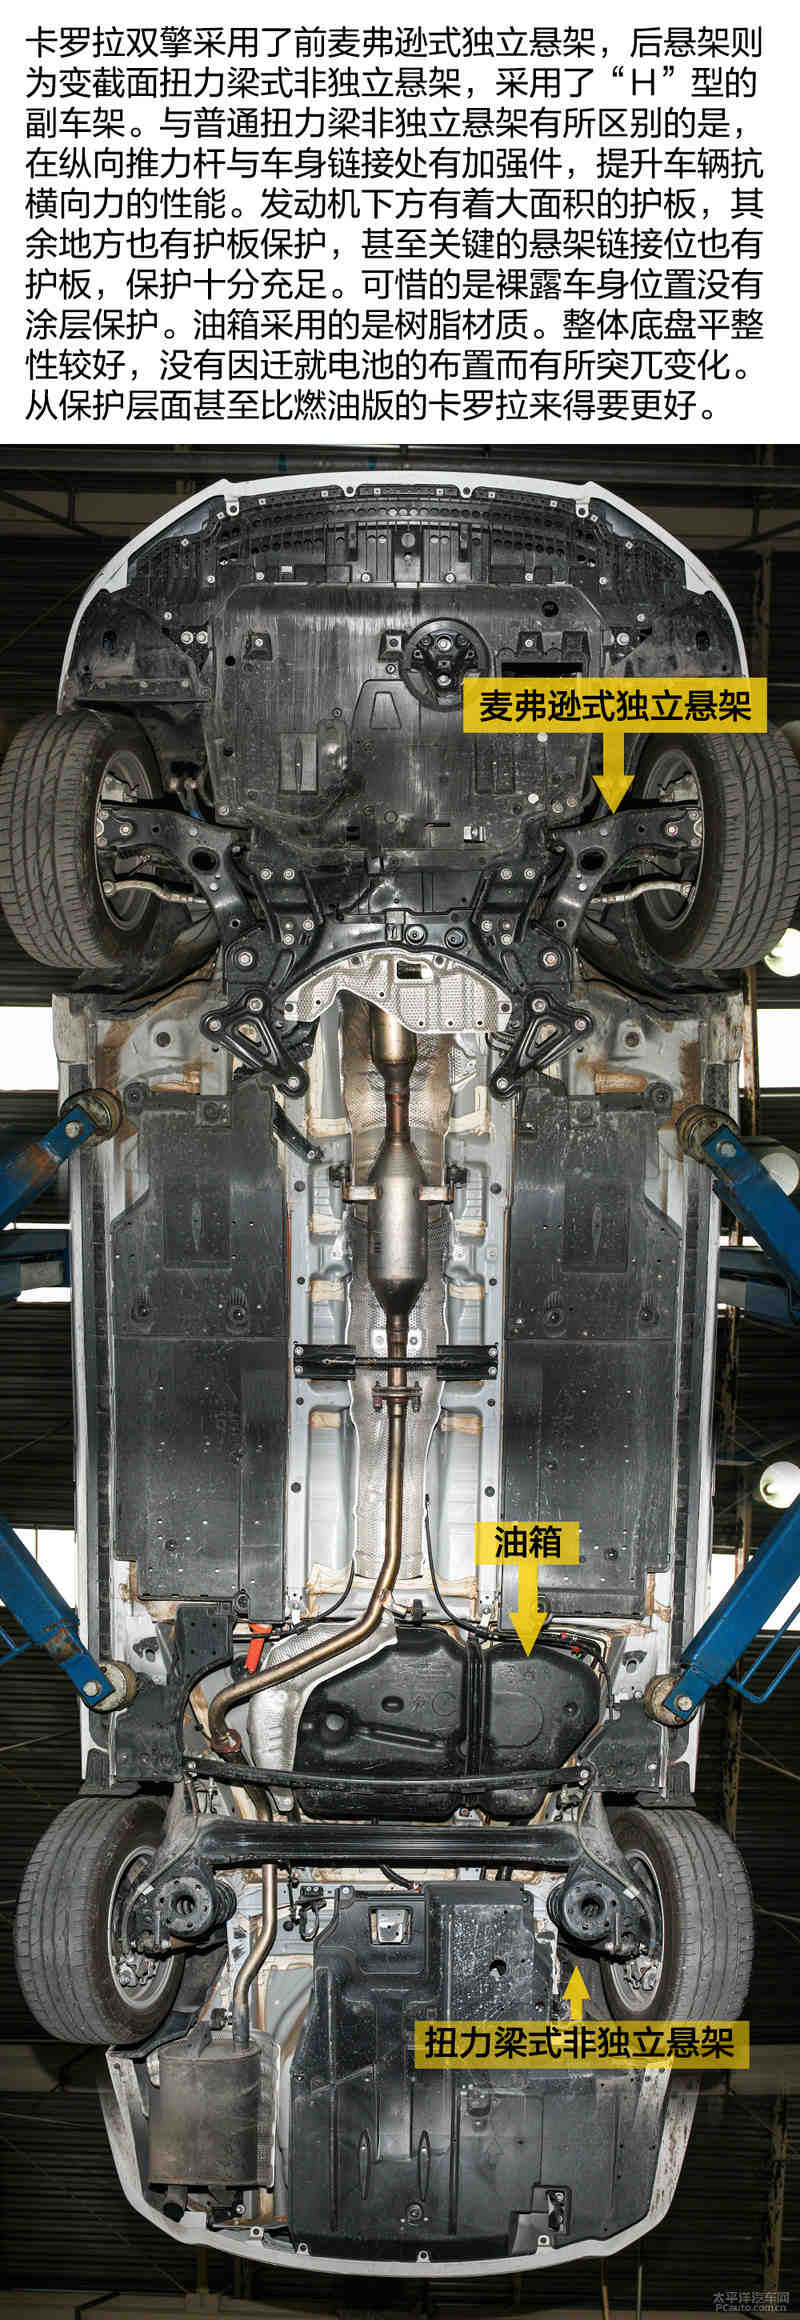 特别保护 一汽丰田卡罗拉双擎底盘实拍解析